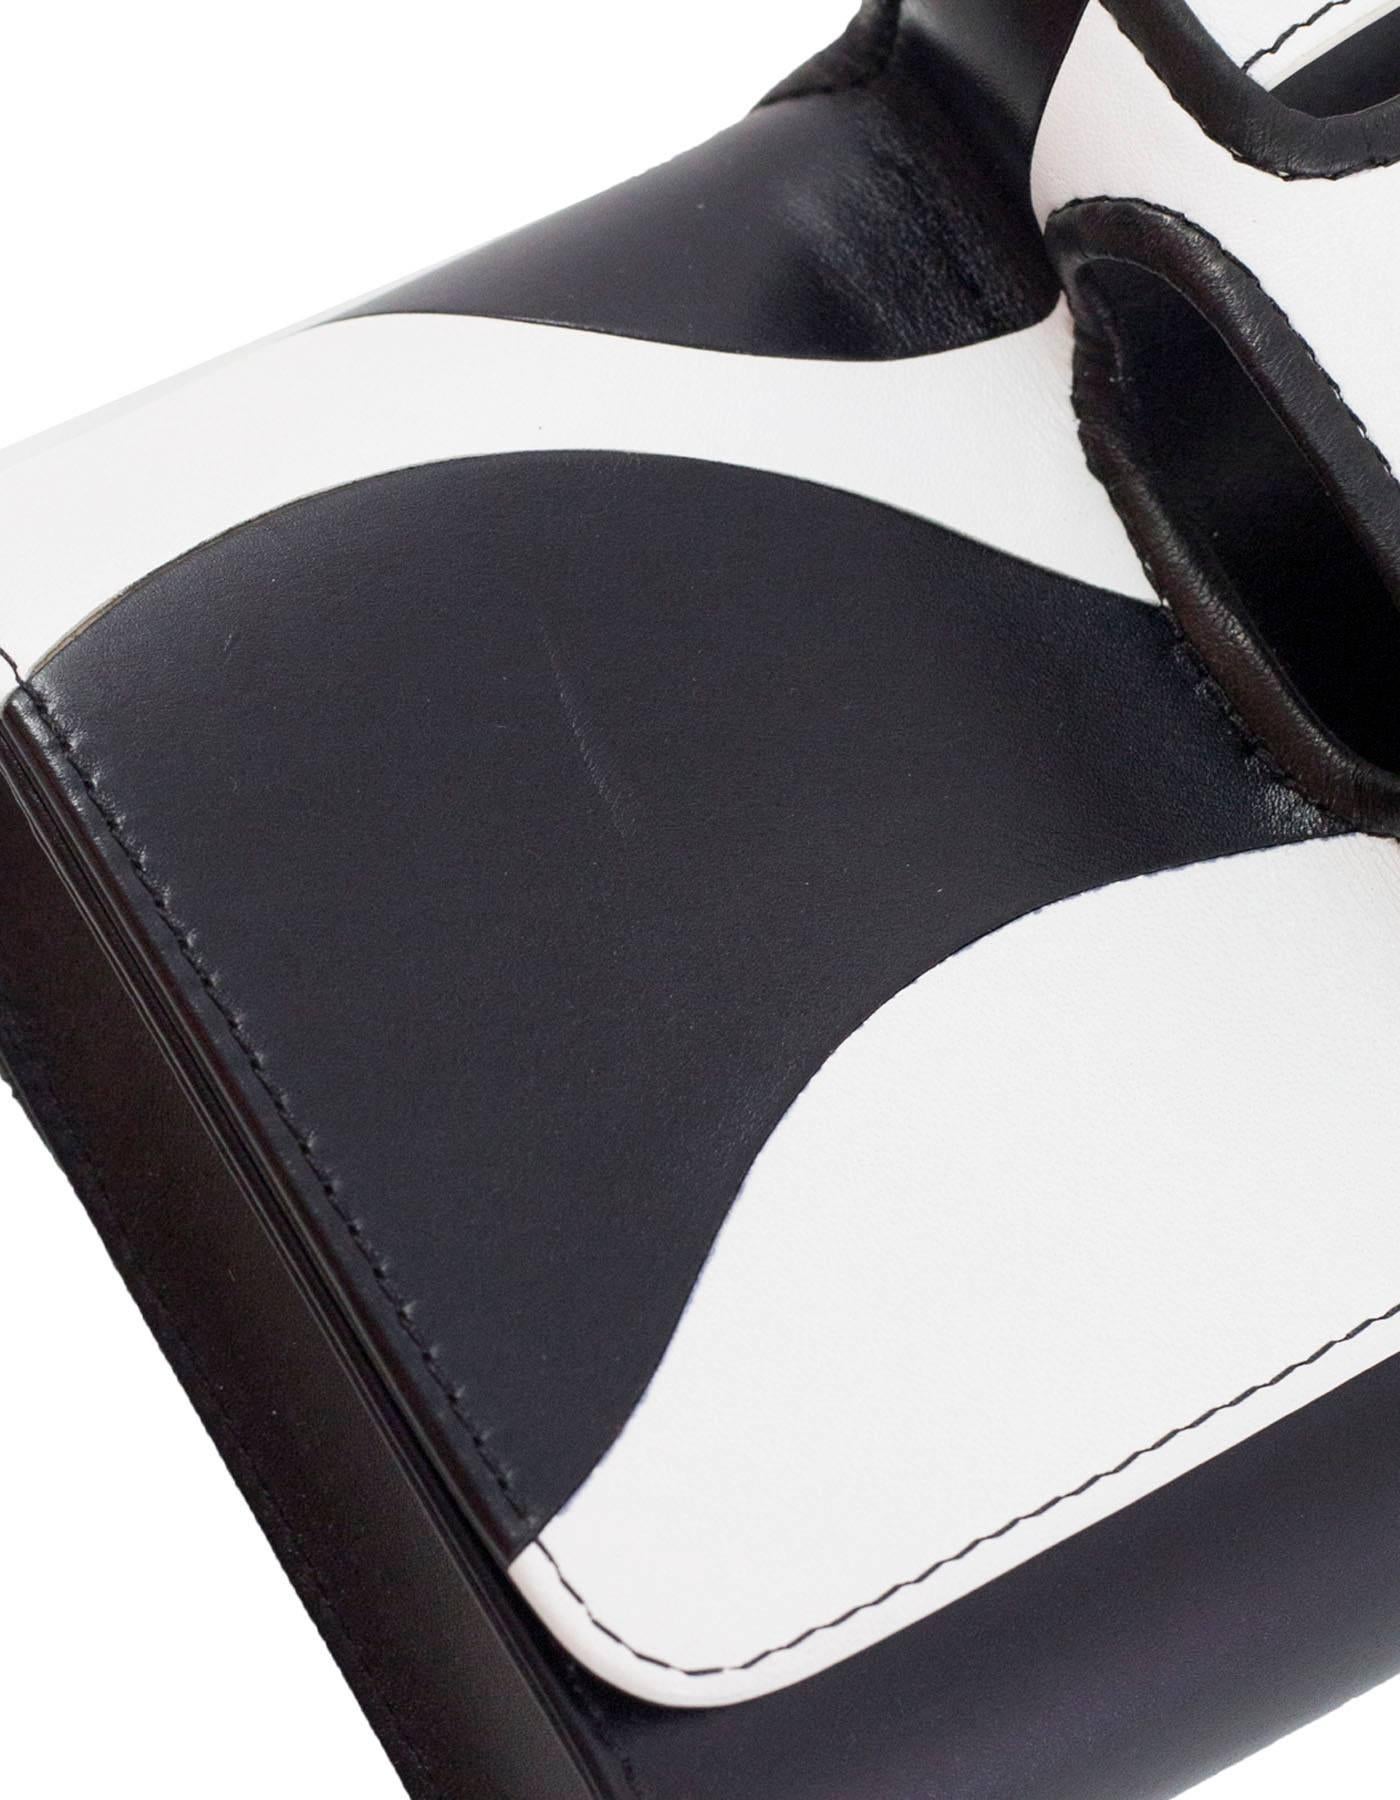 Perrin Black & White Mod La Vague La Capitale Glove Clutch Bag rt. $1, 250 3